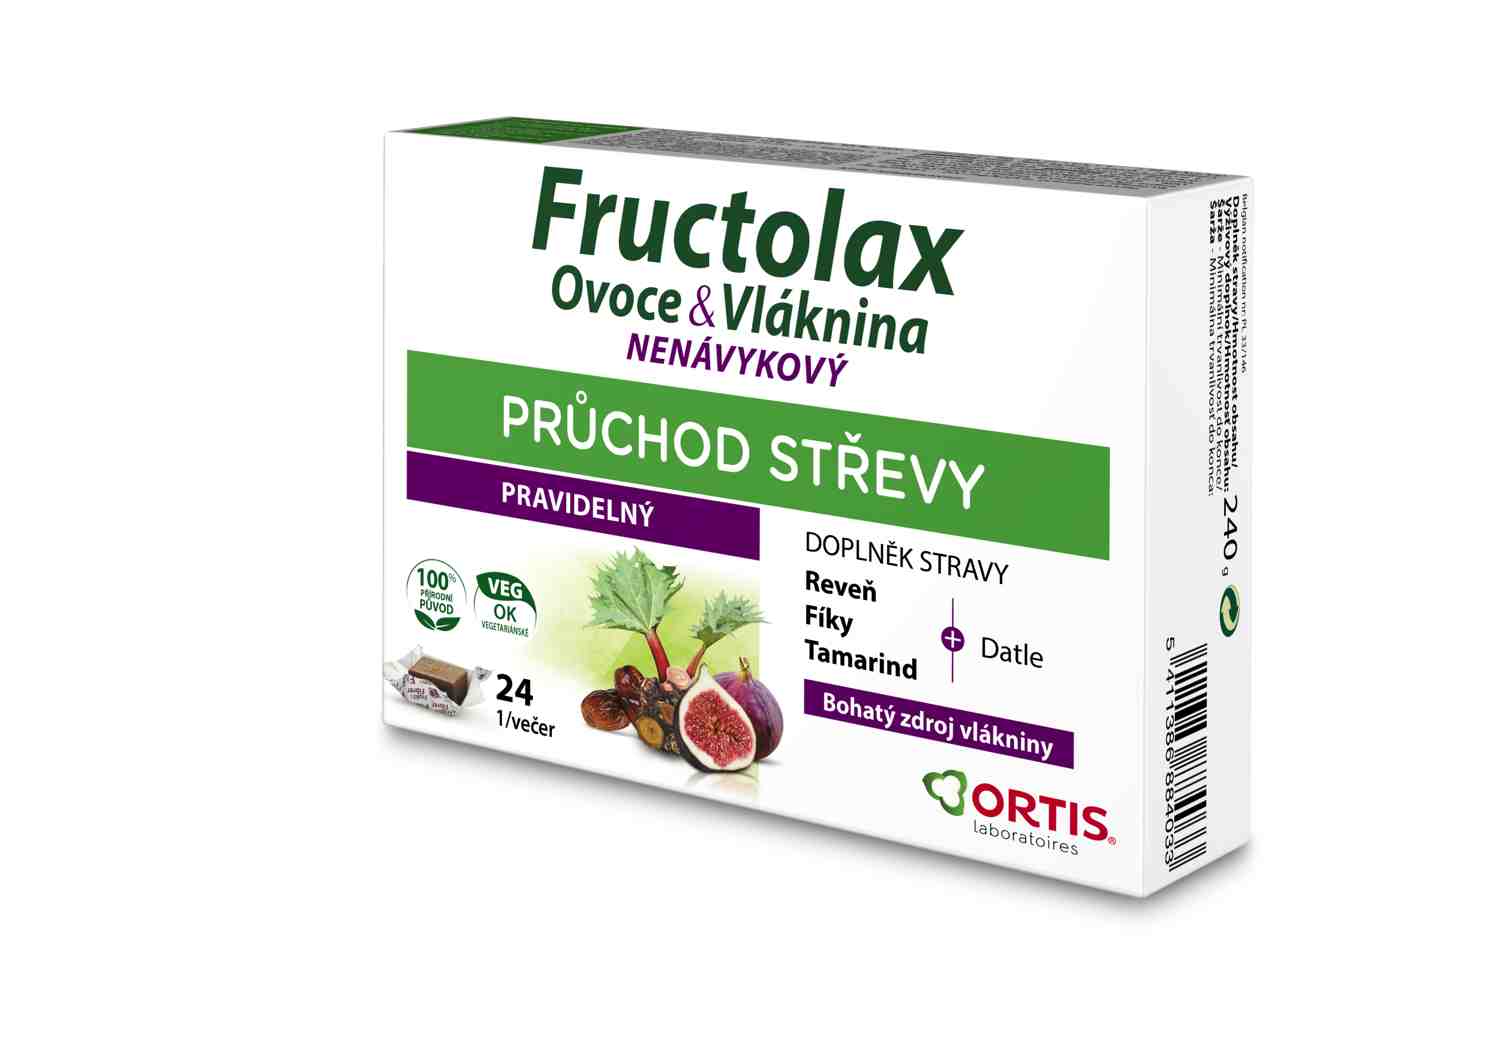 Ortis Fructolax Ovoce&Vláknina žvýkací kostky 24 kusů